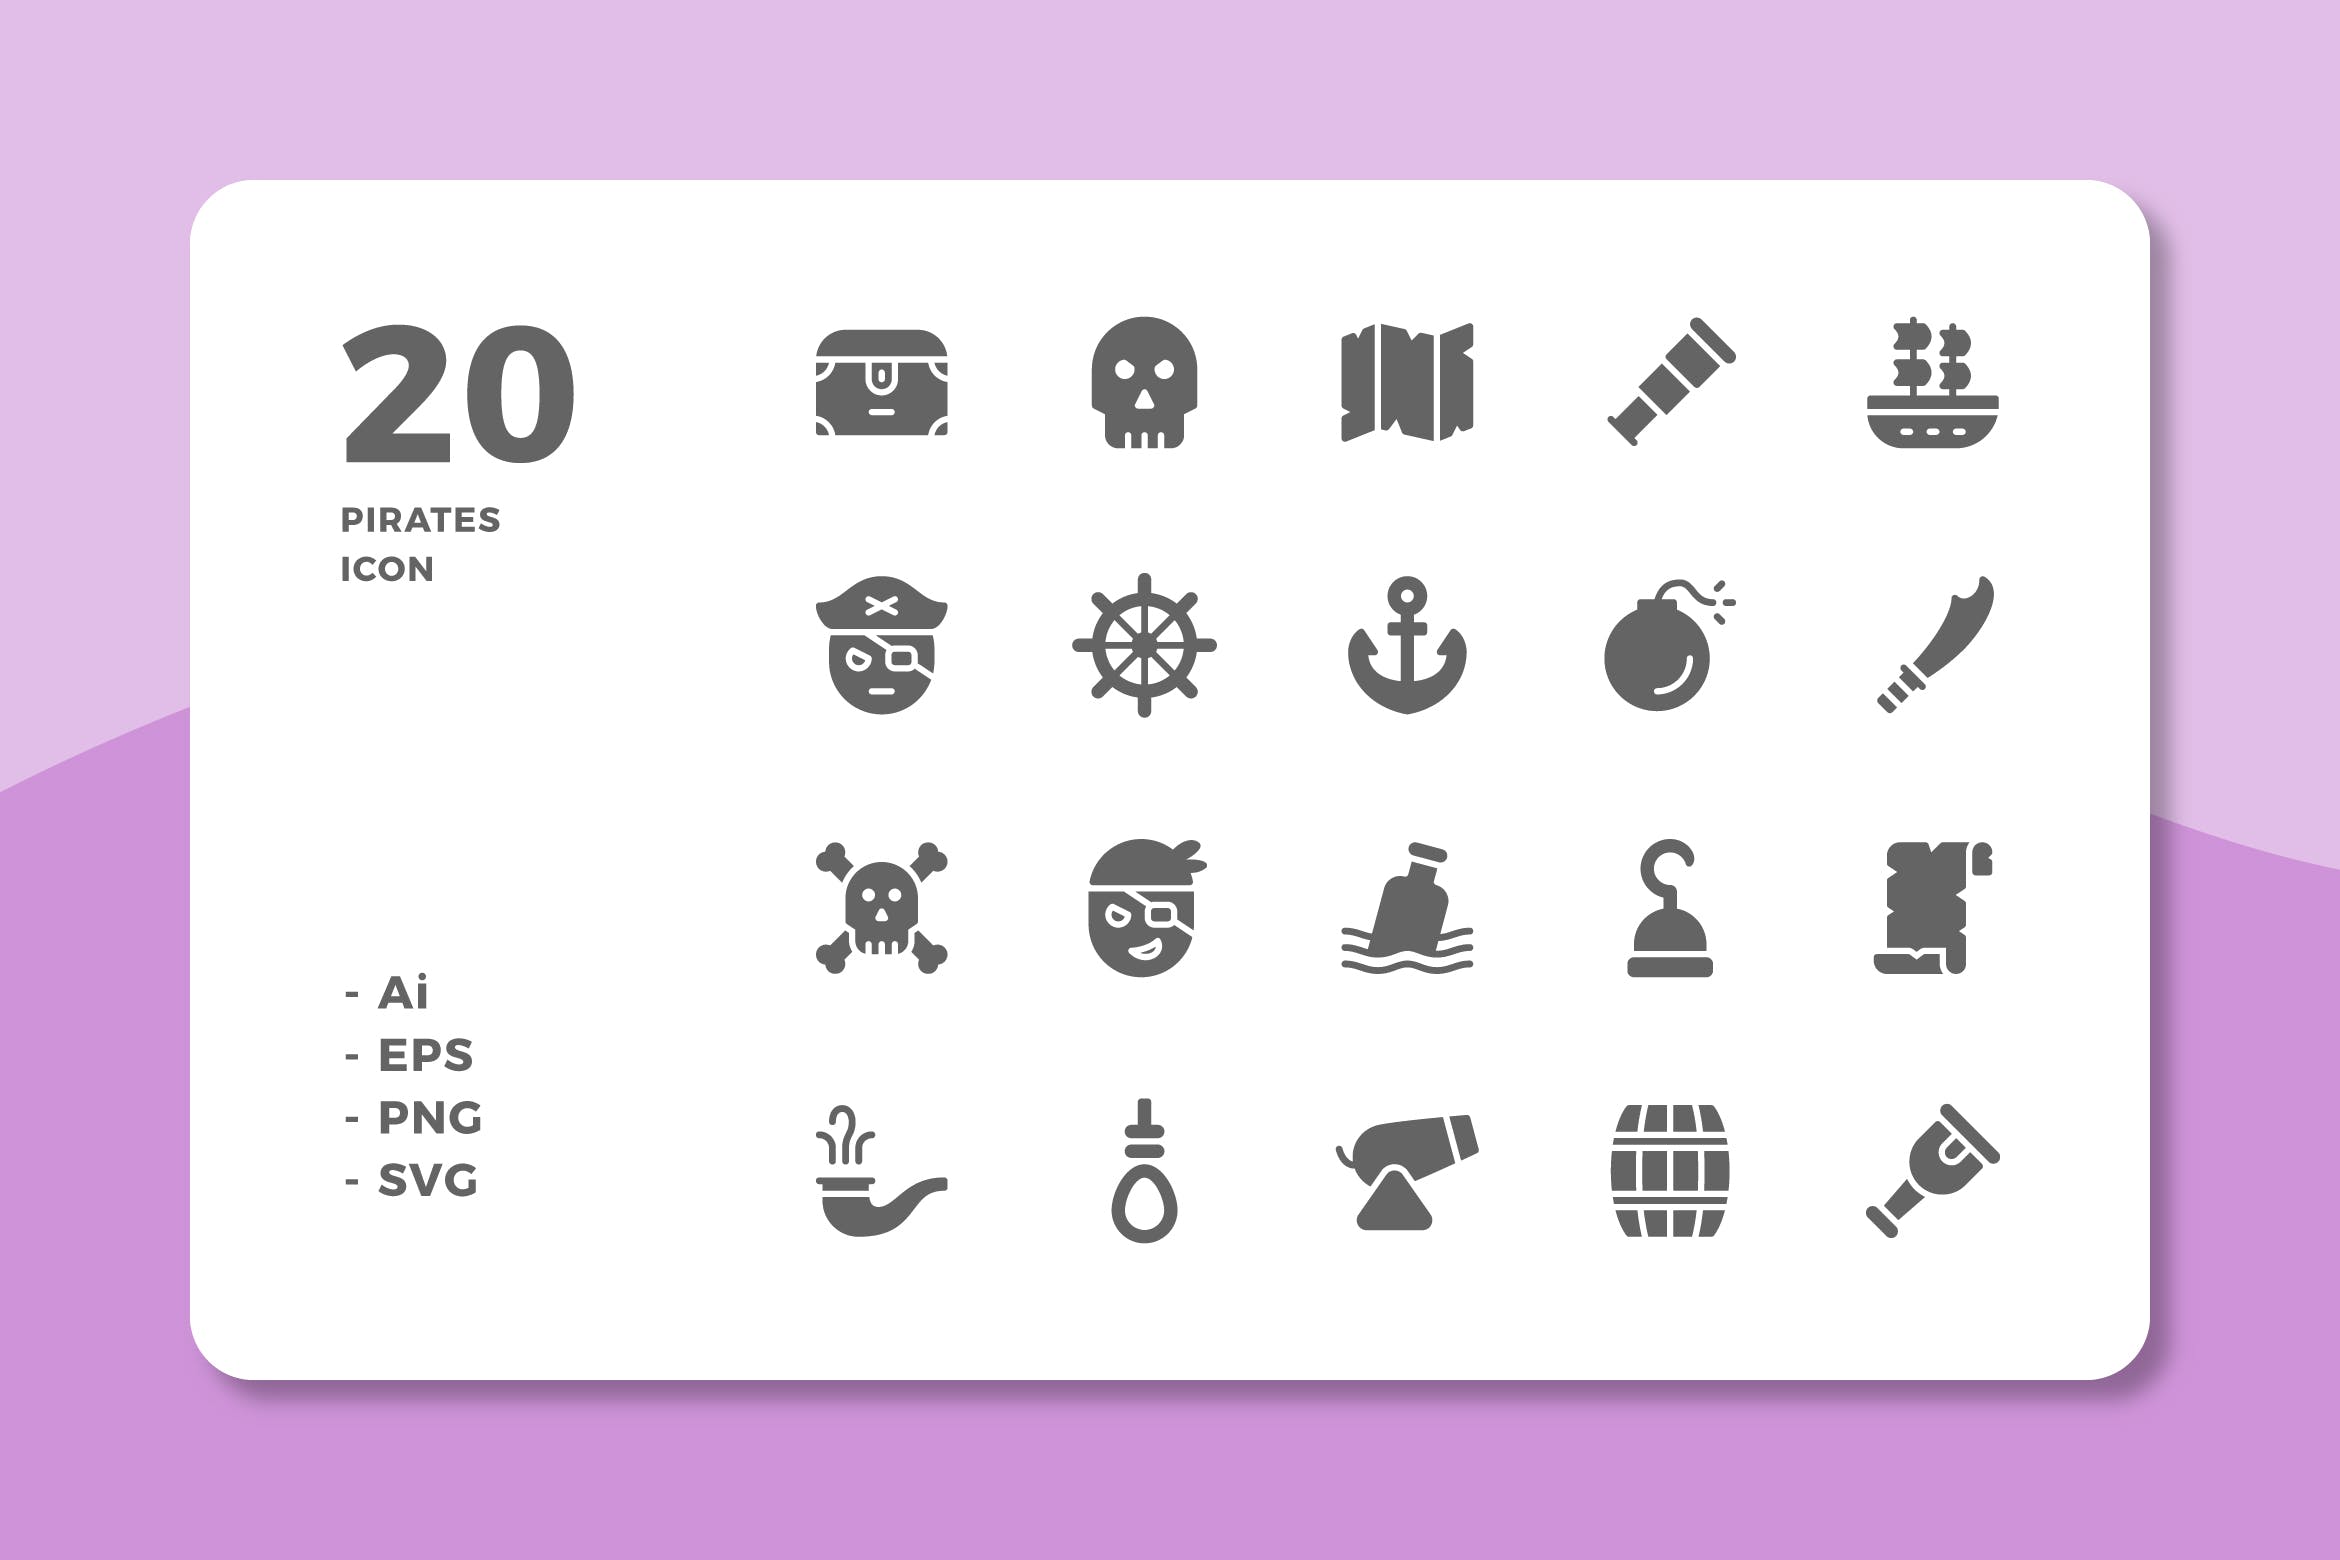 20个高品质的海盗图标合集20 Pirates Icons (Solid)插图